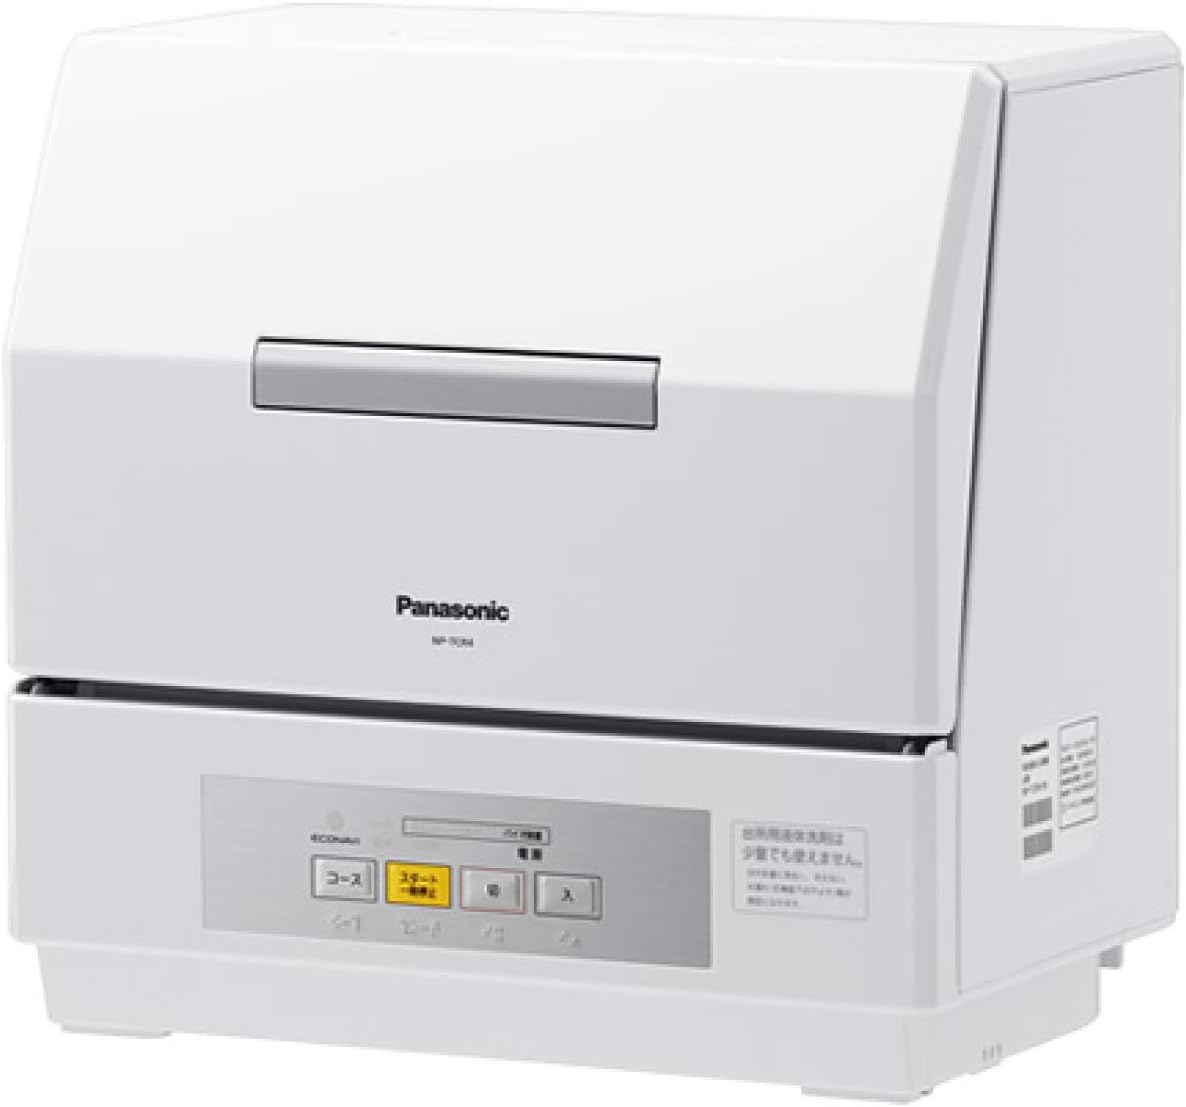 パナソニック Panasonic 食器洗い乾燥機 電器食器洗い乾燥機 ホワイト 食洗機 プチ食洗 NP-TCR4-W